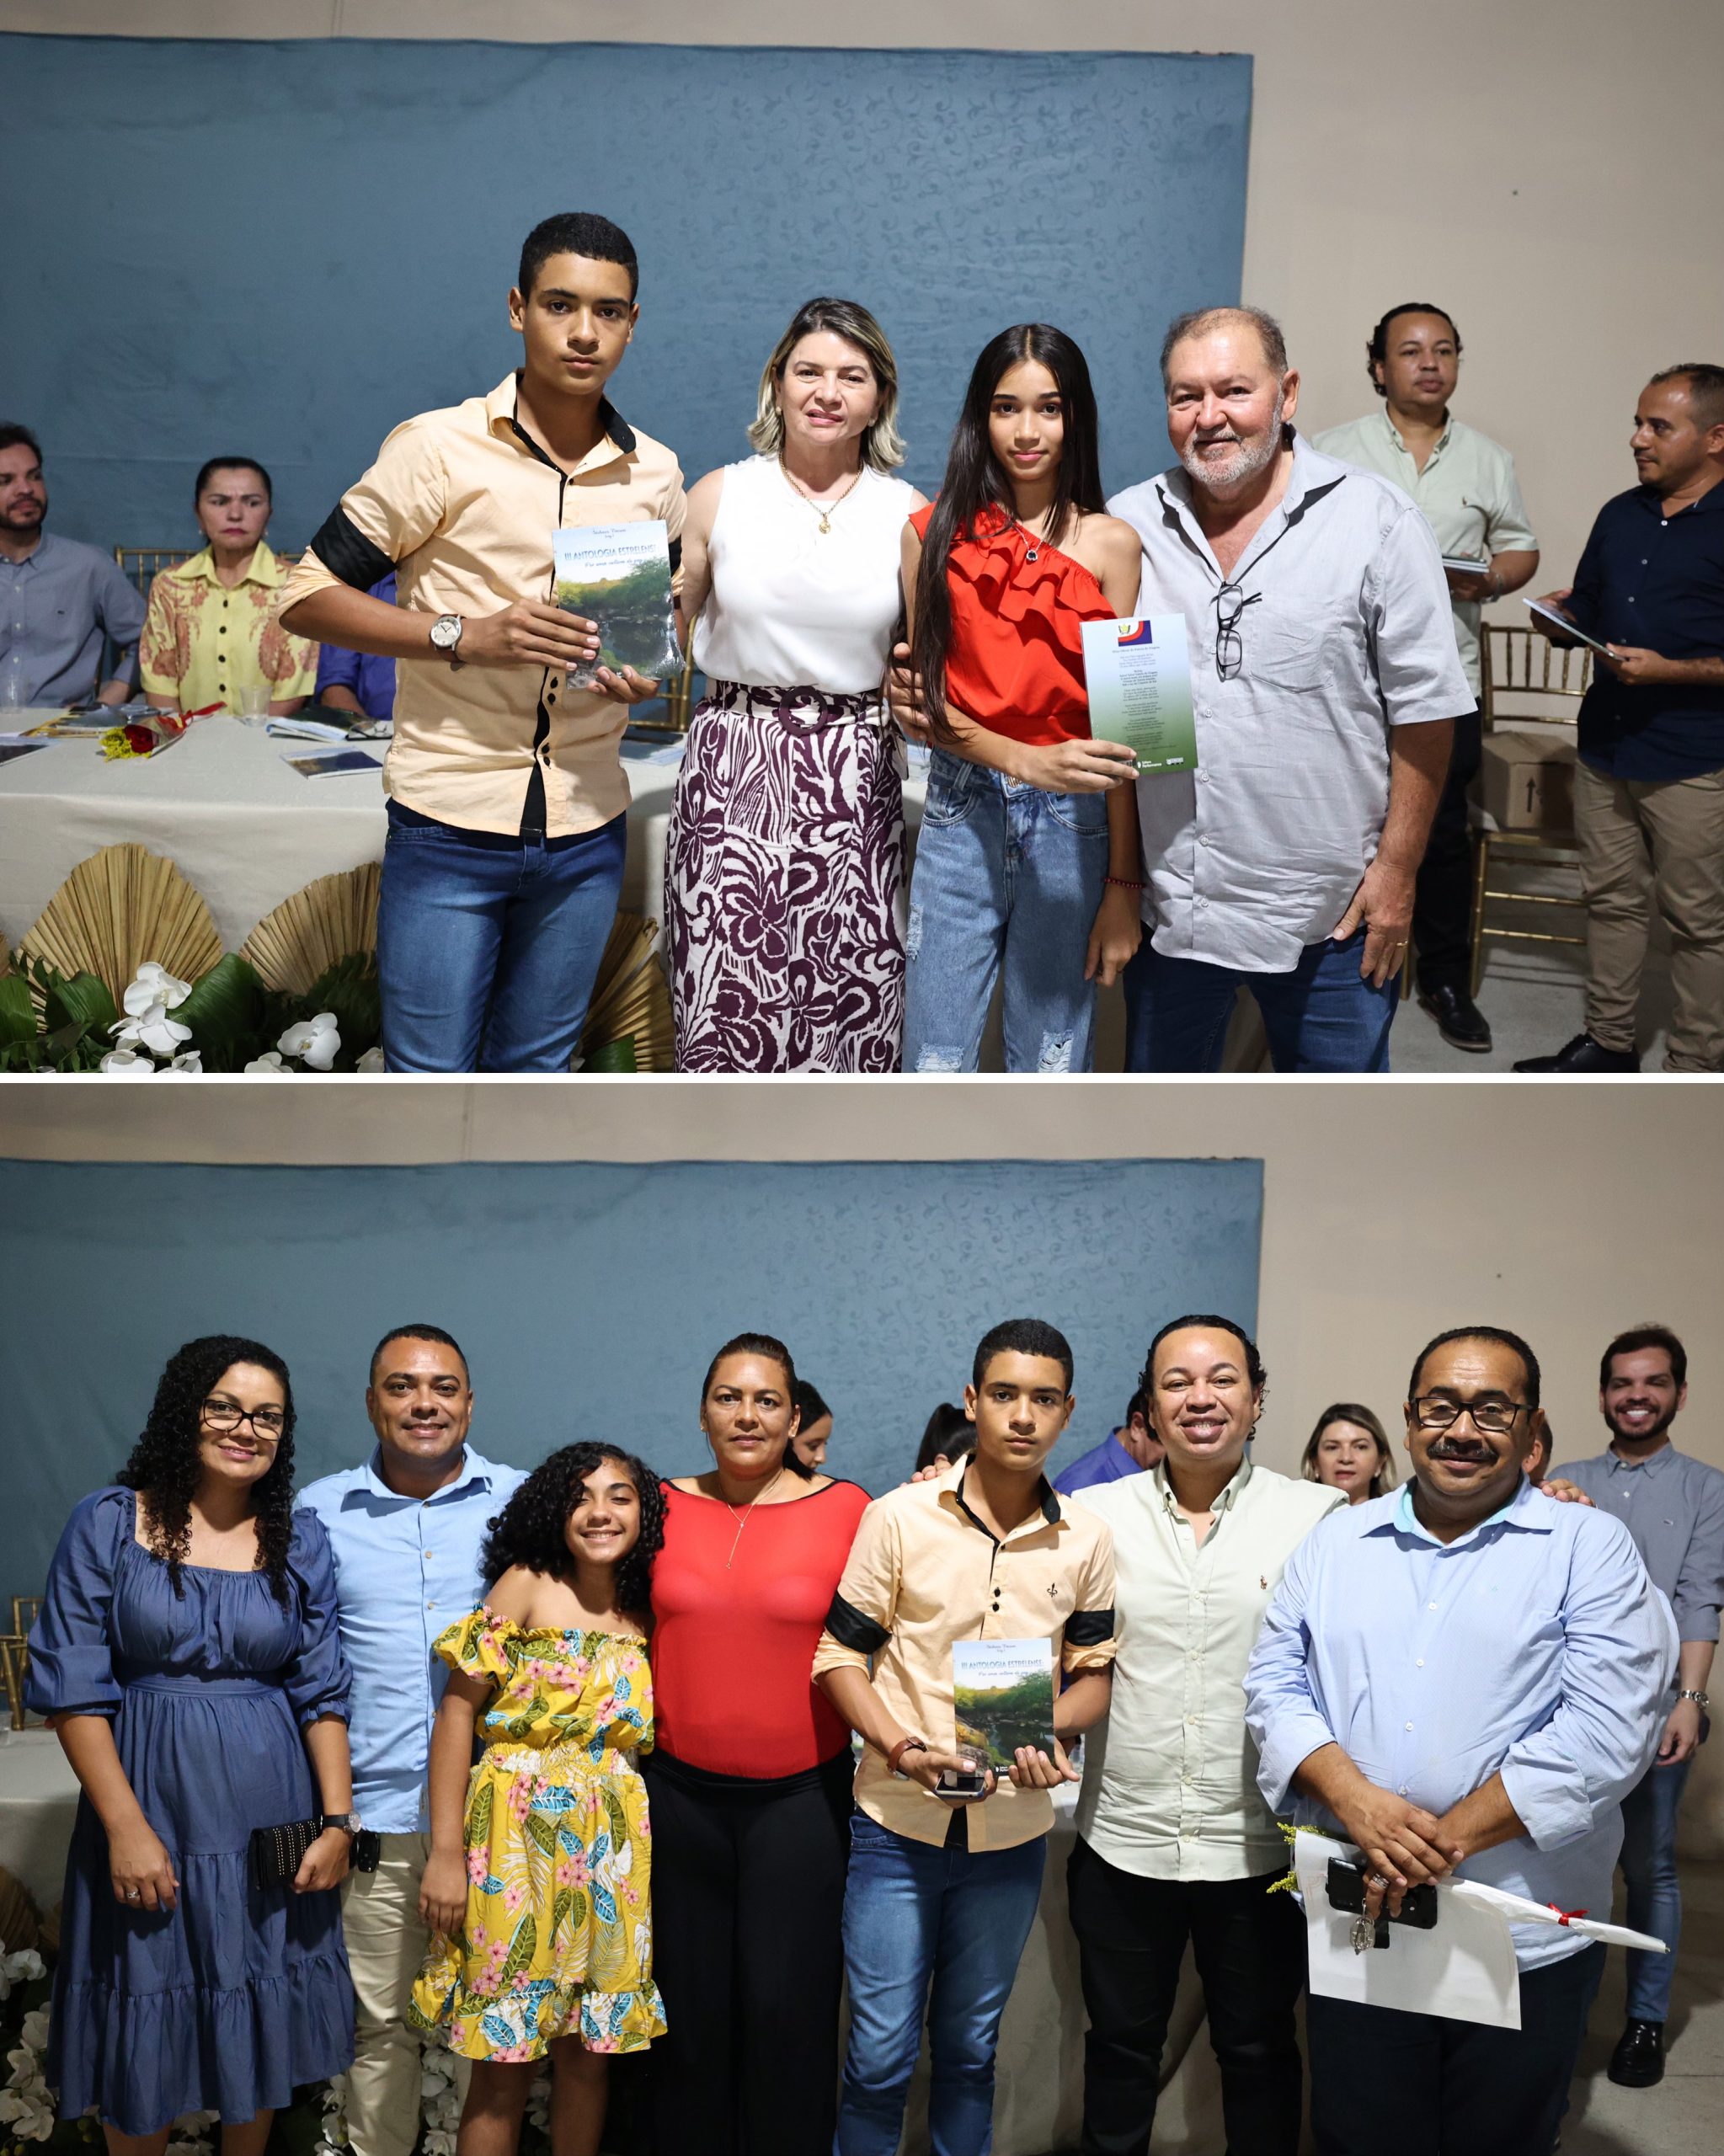 Prefeitura de Estrela apoia lançamento do livro “III ANTOLOGIA ESTRELENSE: Por uma Cultura de Paz”